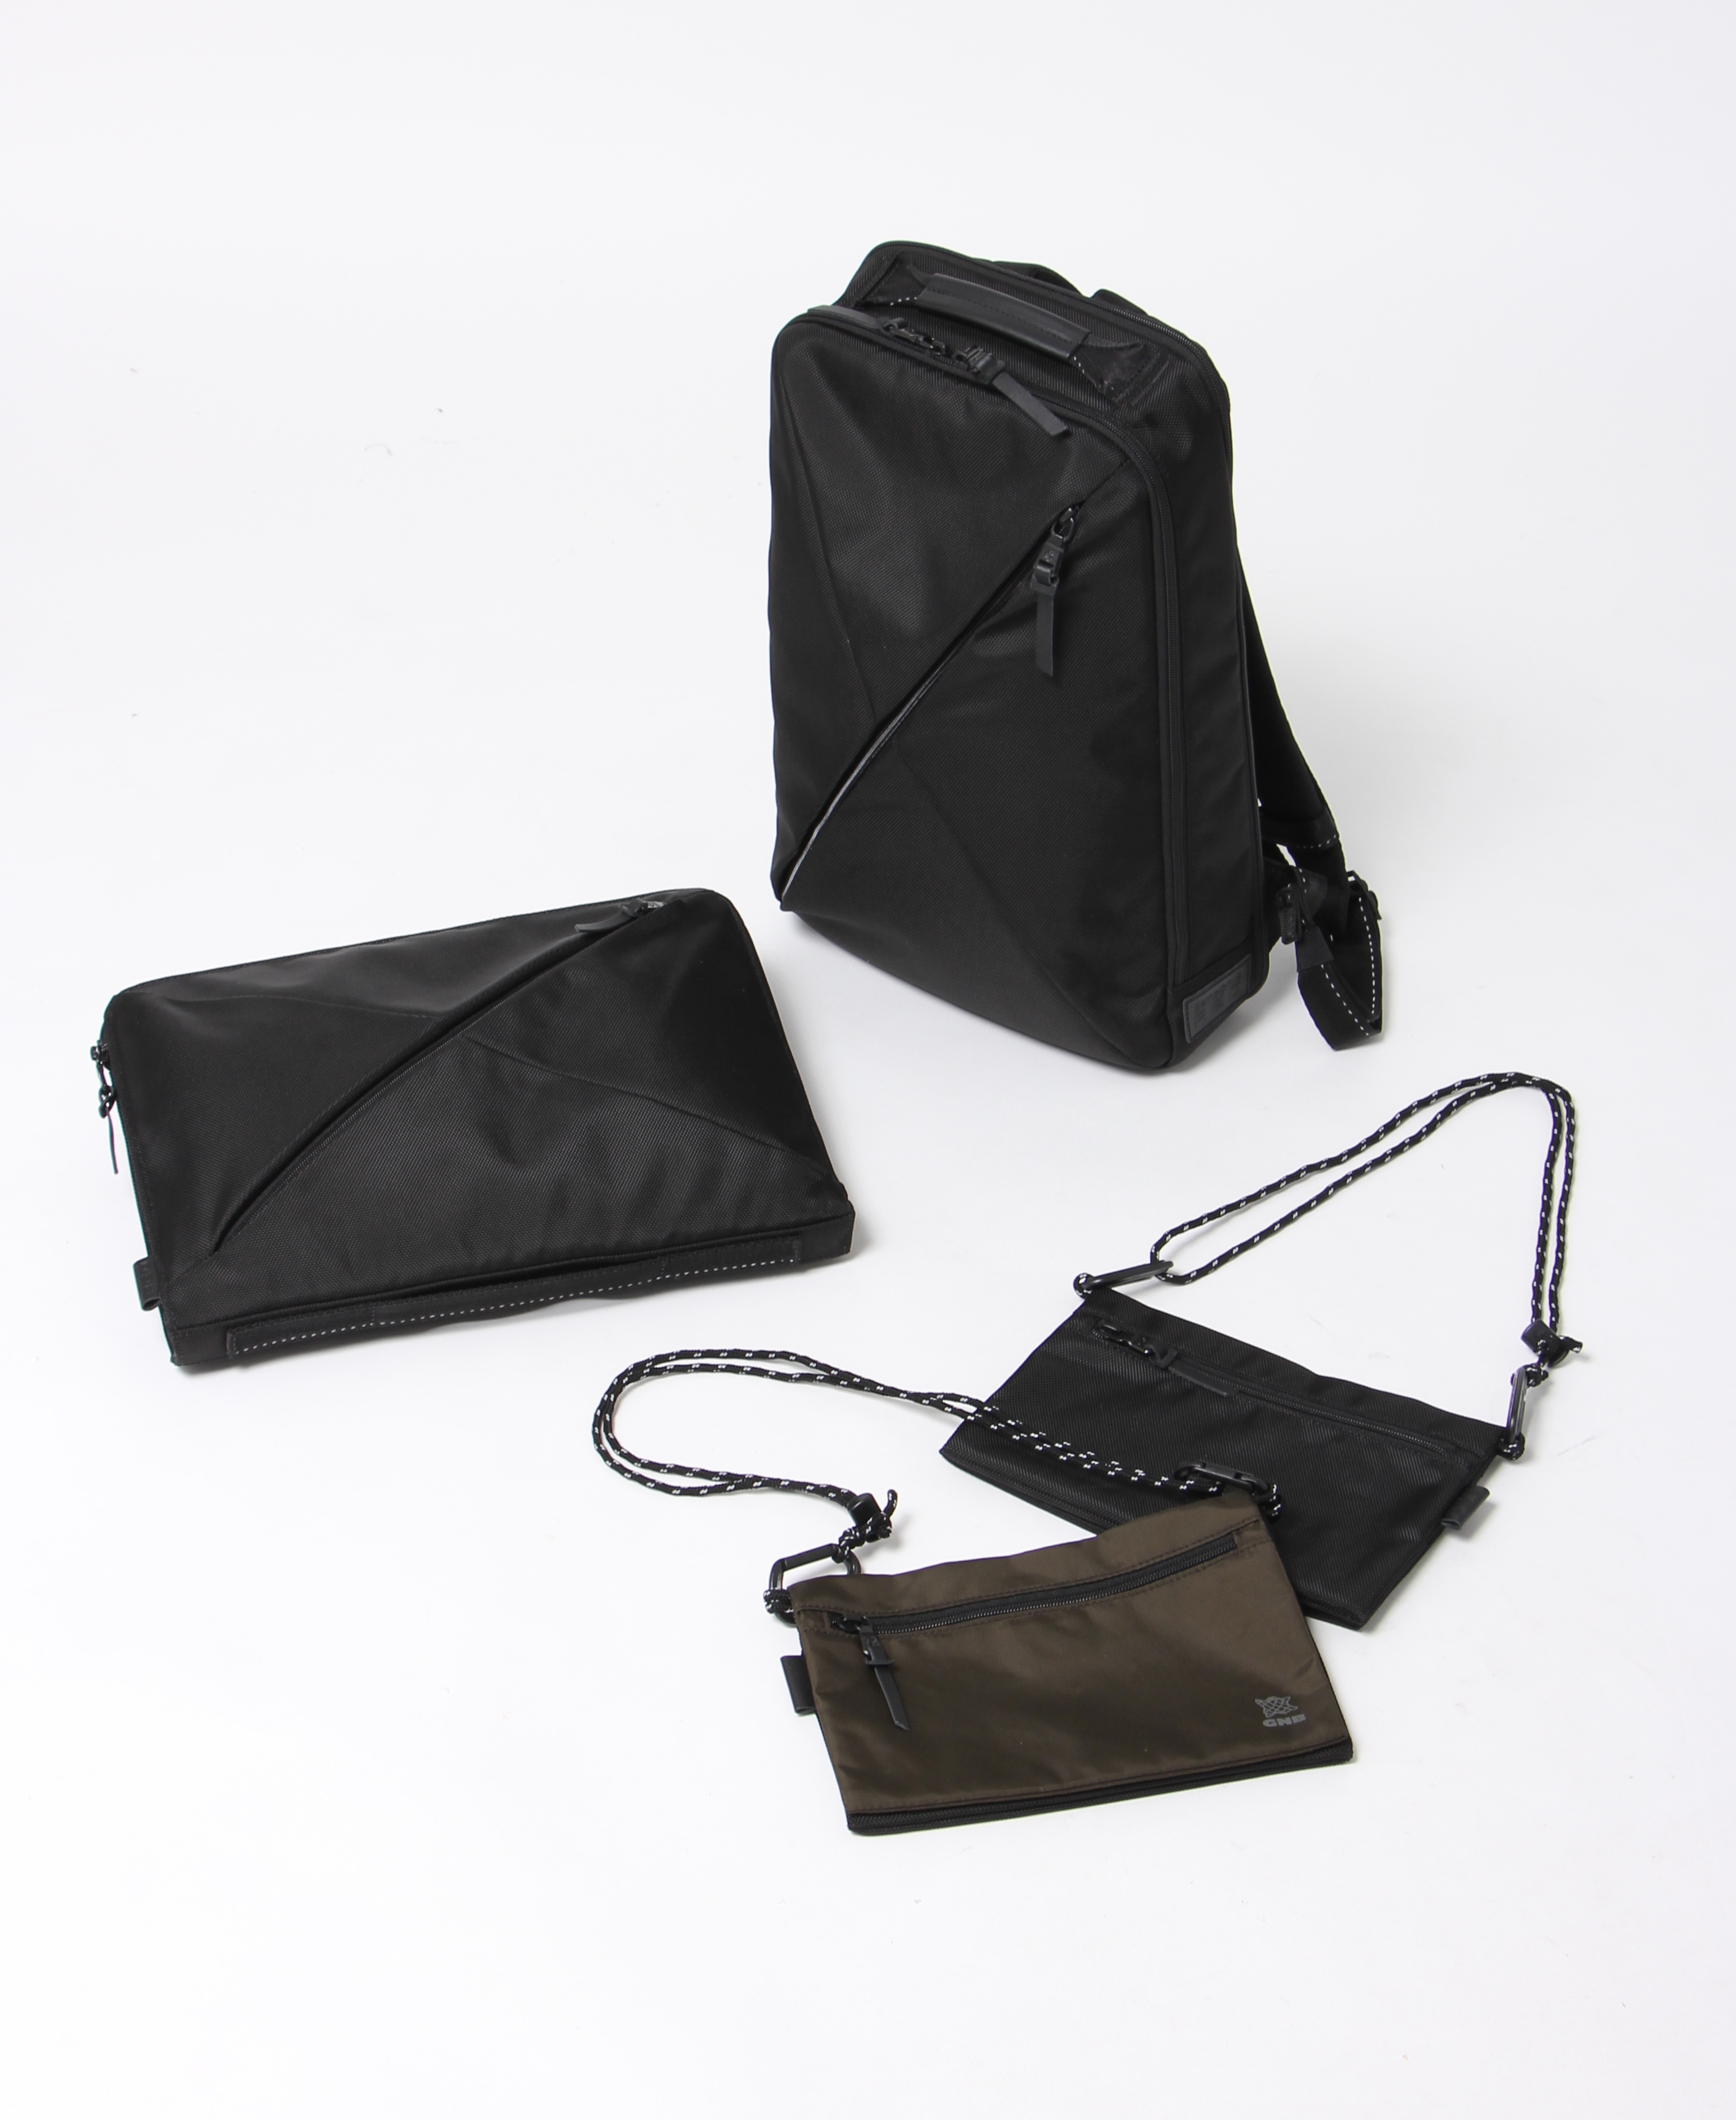 世界的バッグメーカー「サムソナイト」との共同企画～ビジネスからカジュアルまで使えるバッグを「ザ・スーツカンパニー」で発売～